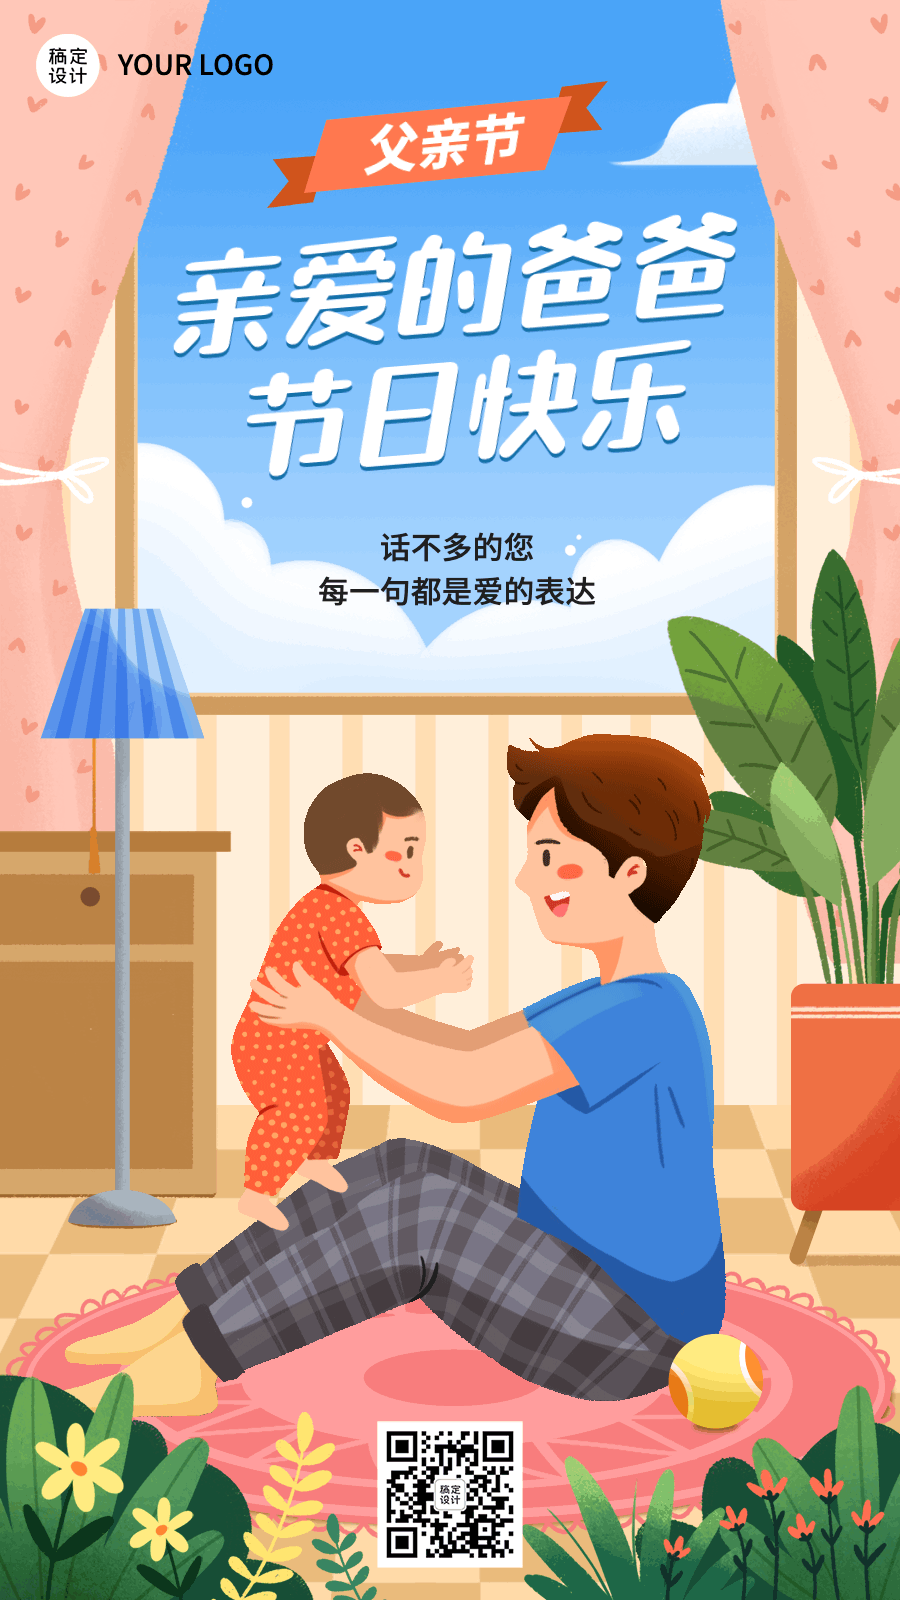 父亲节节日祝福插画动态海报